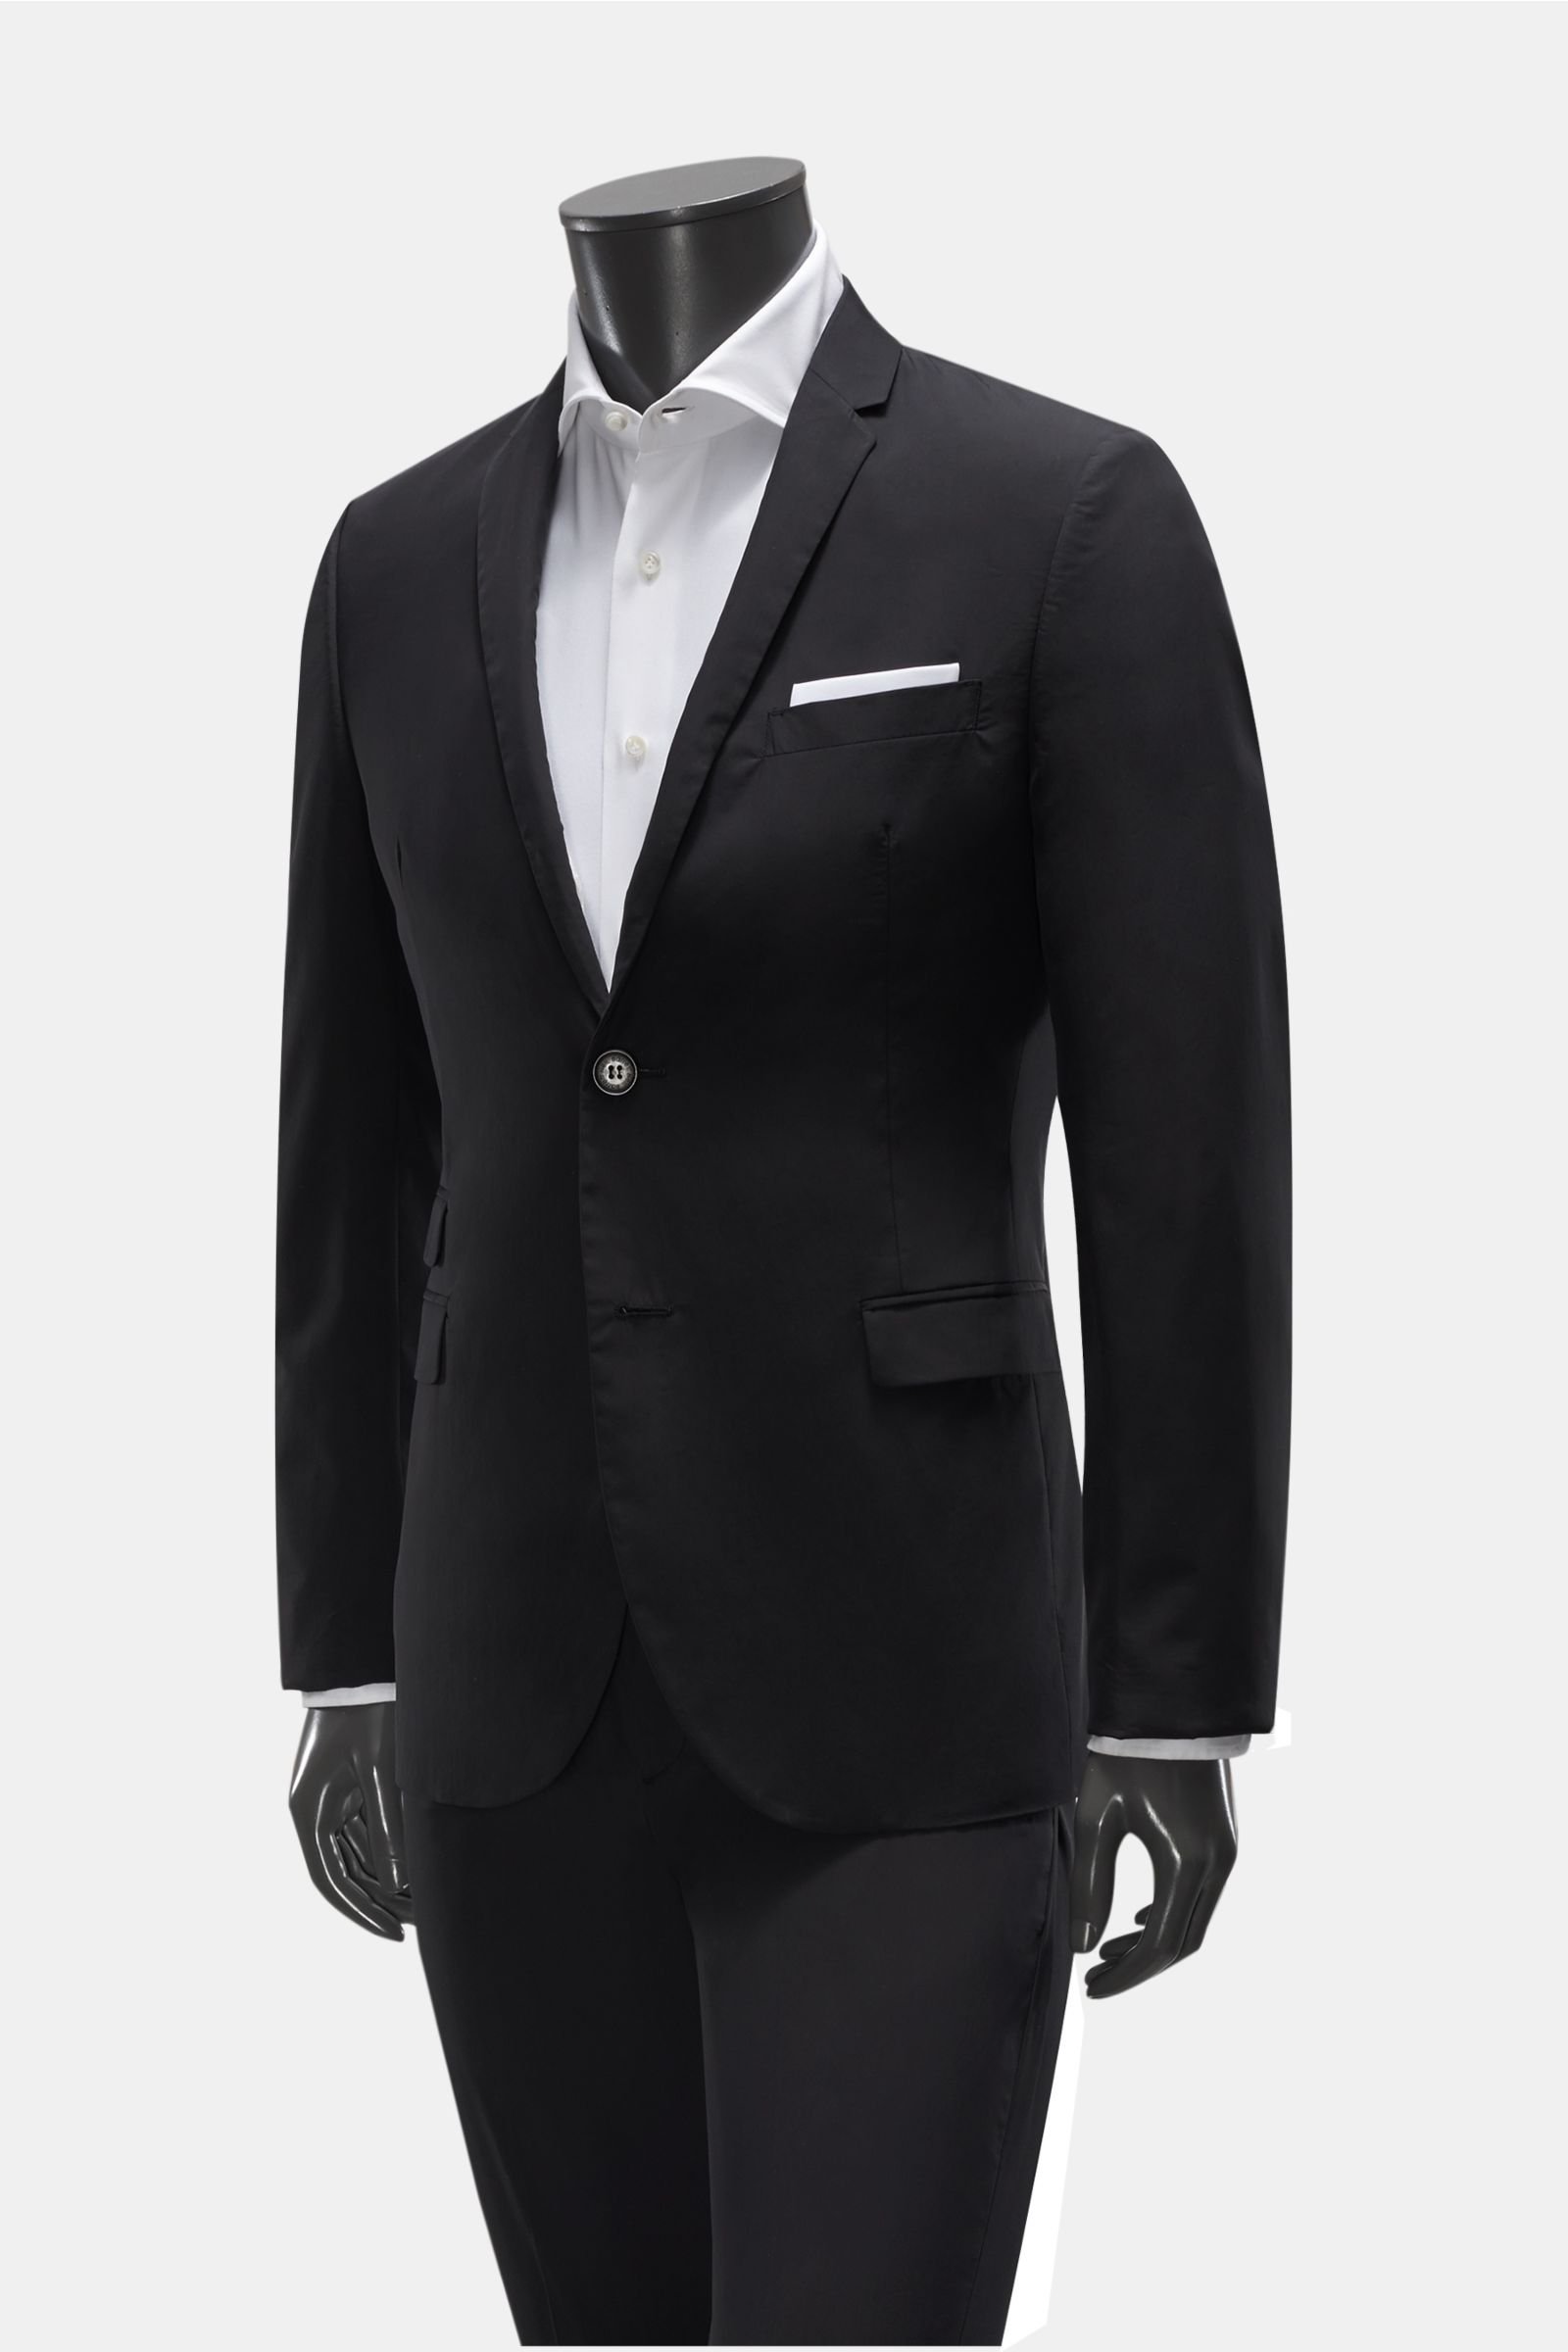 Suit black